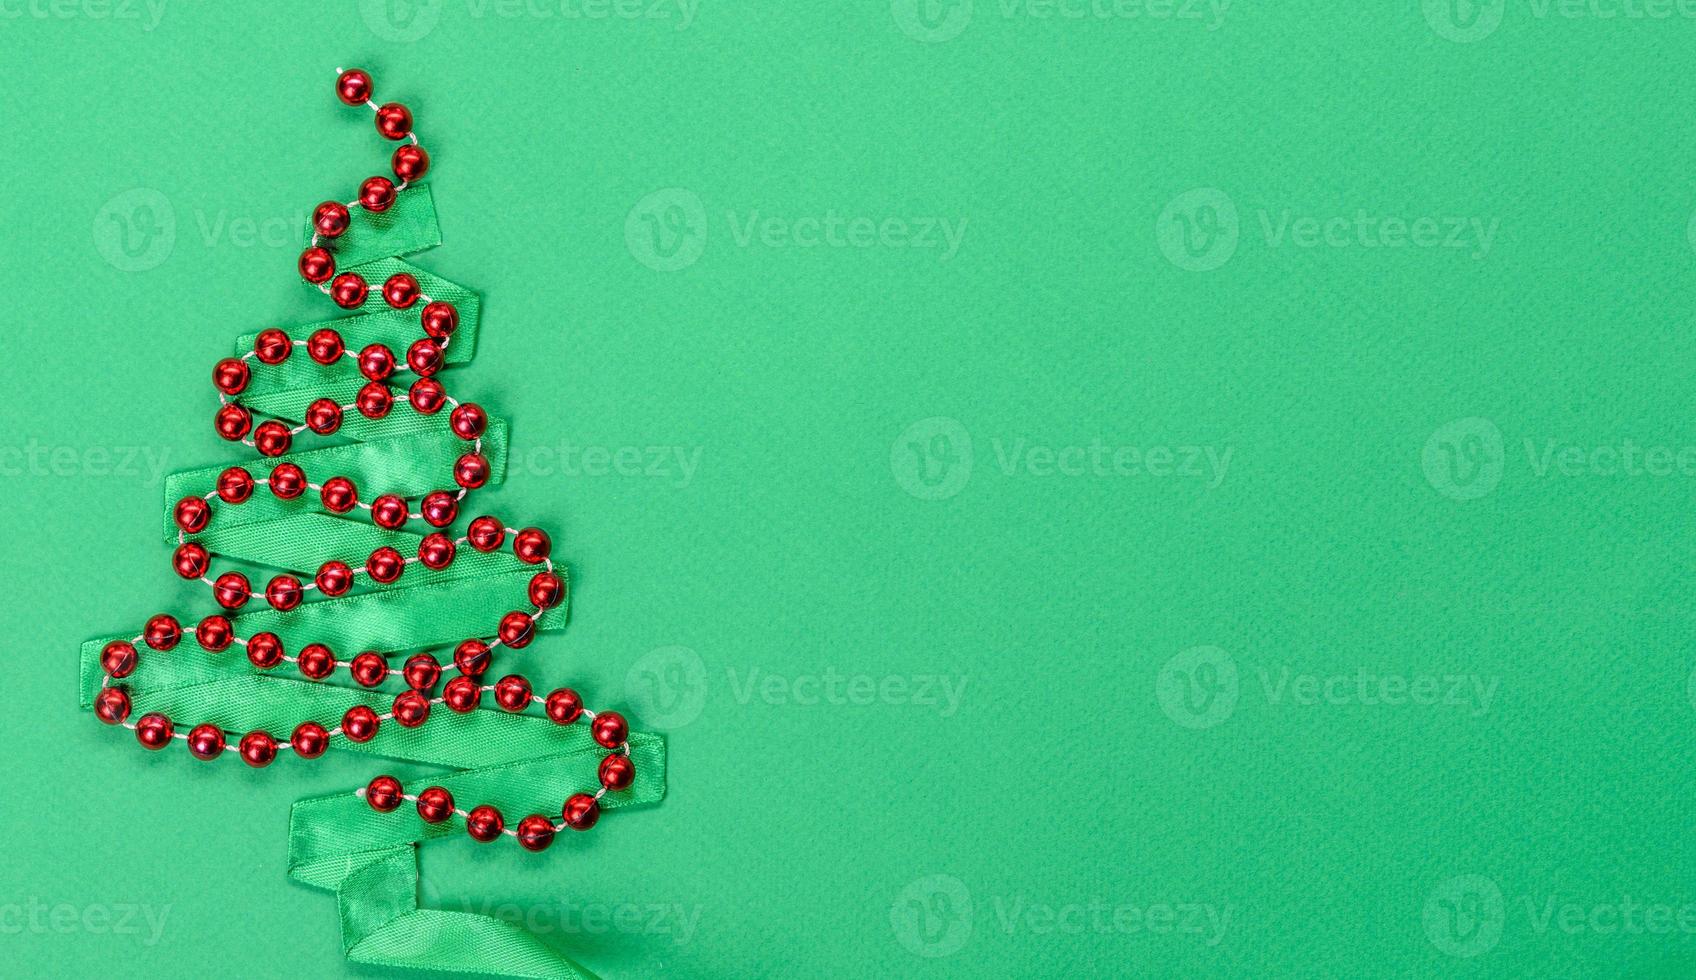 fondo decorativo de colores brillantes de navidad foto